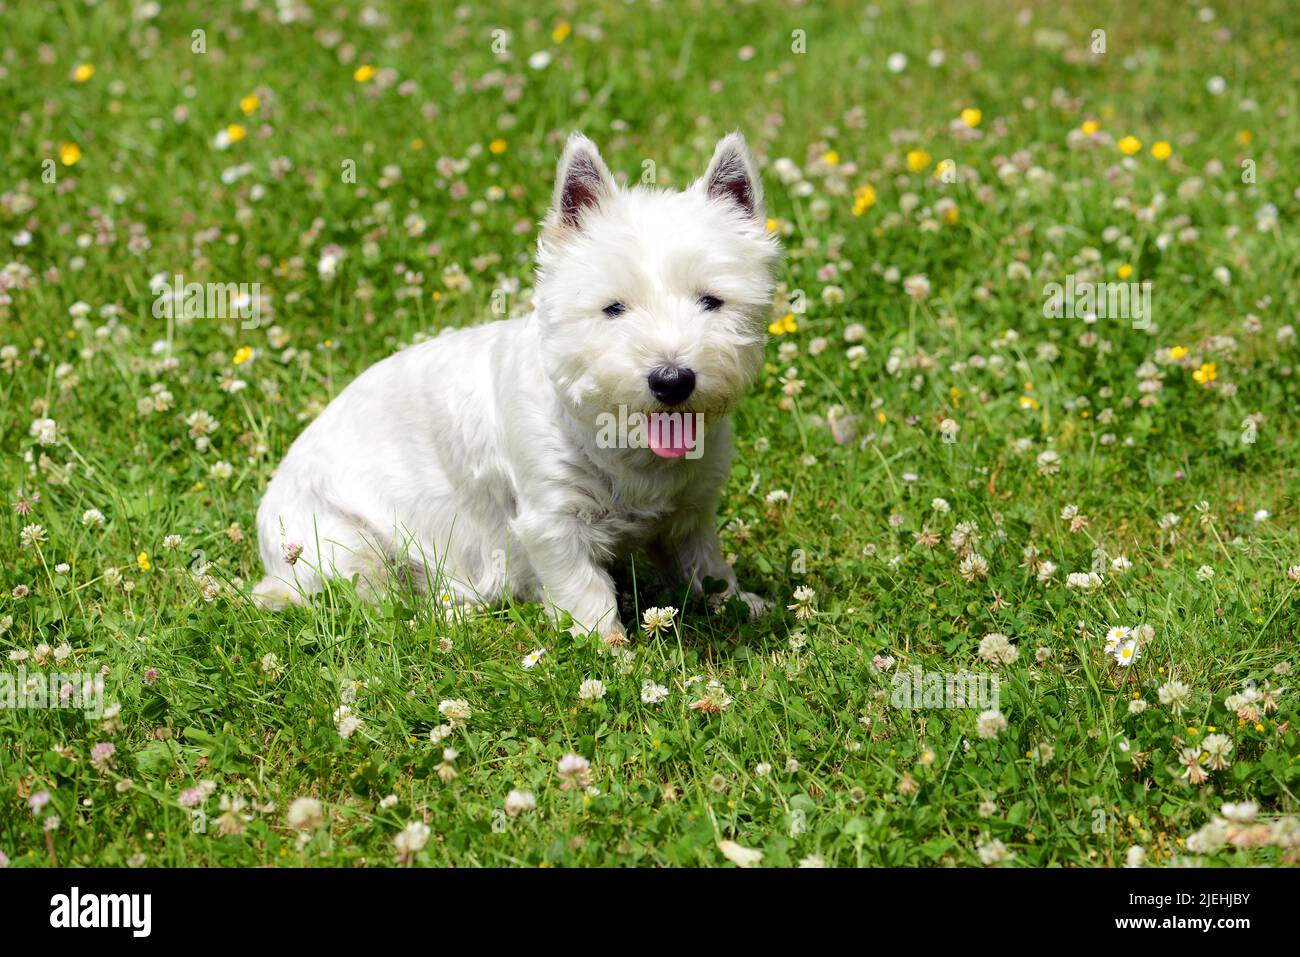 Der Yorkshire Terrier ist eine britische Hunderasse, Zwerg-Terrier, weiss, weisser, weisse, Weibchen, Yorkie, klein, niedlich, Grossbritannien, Foto de stock